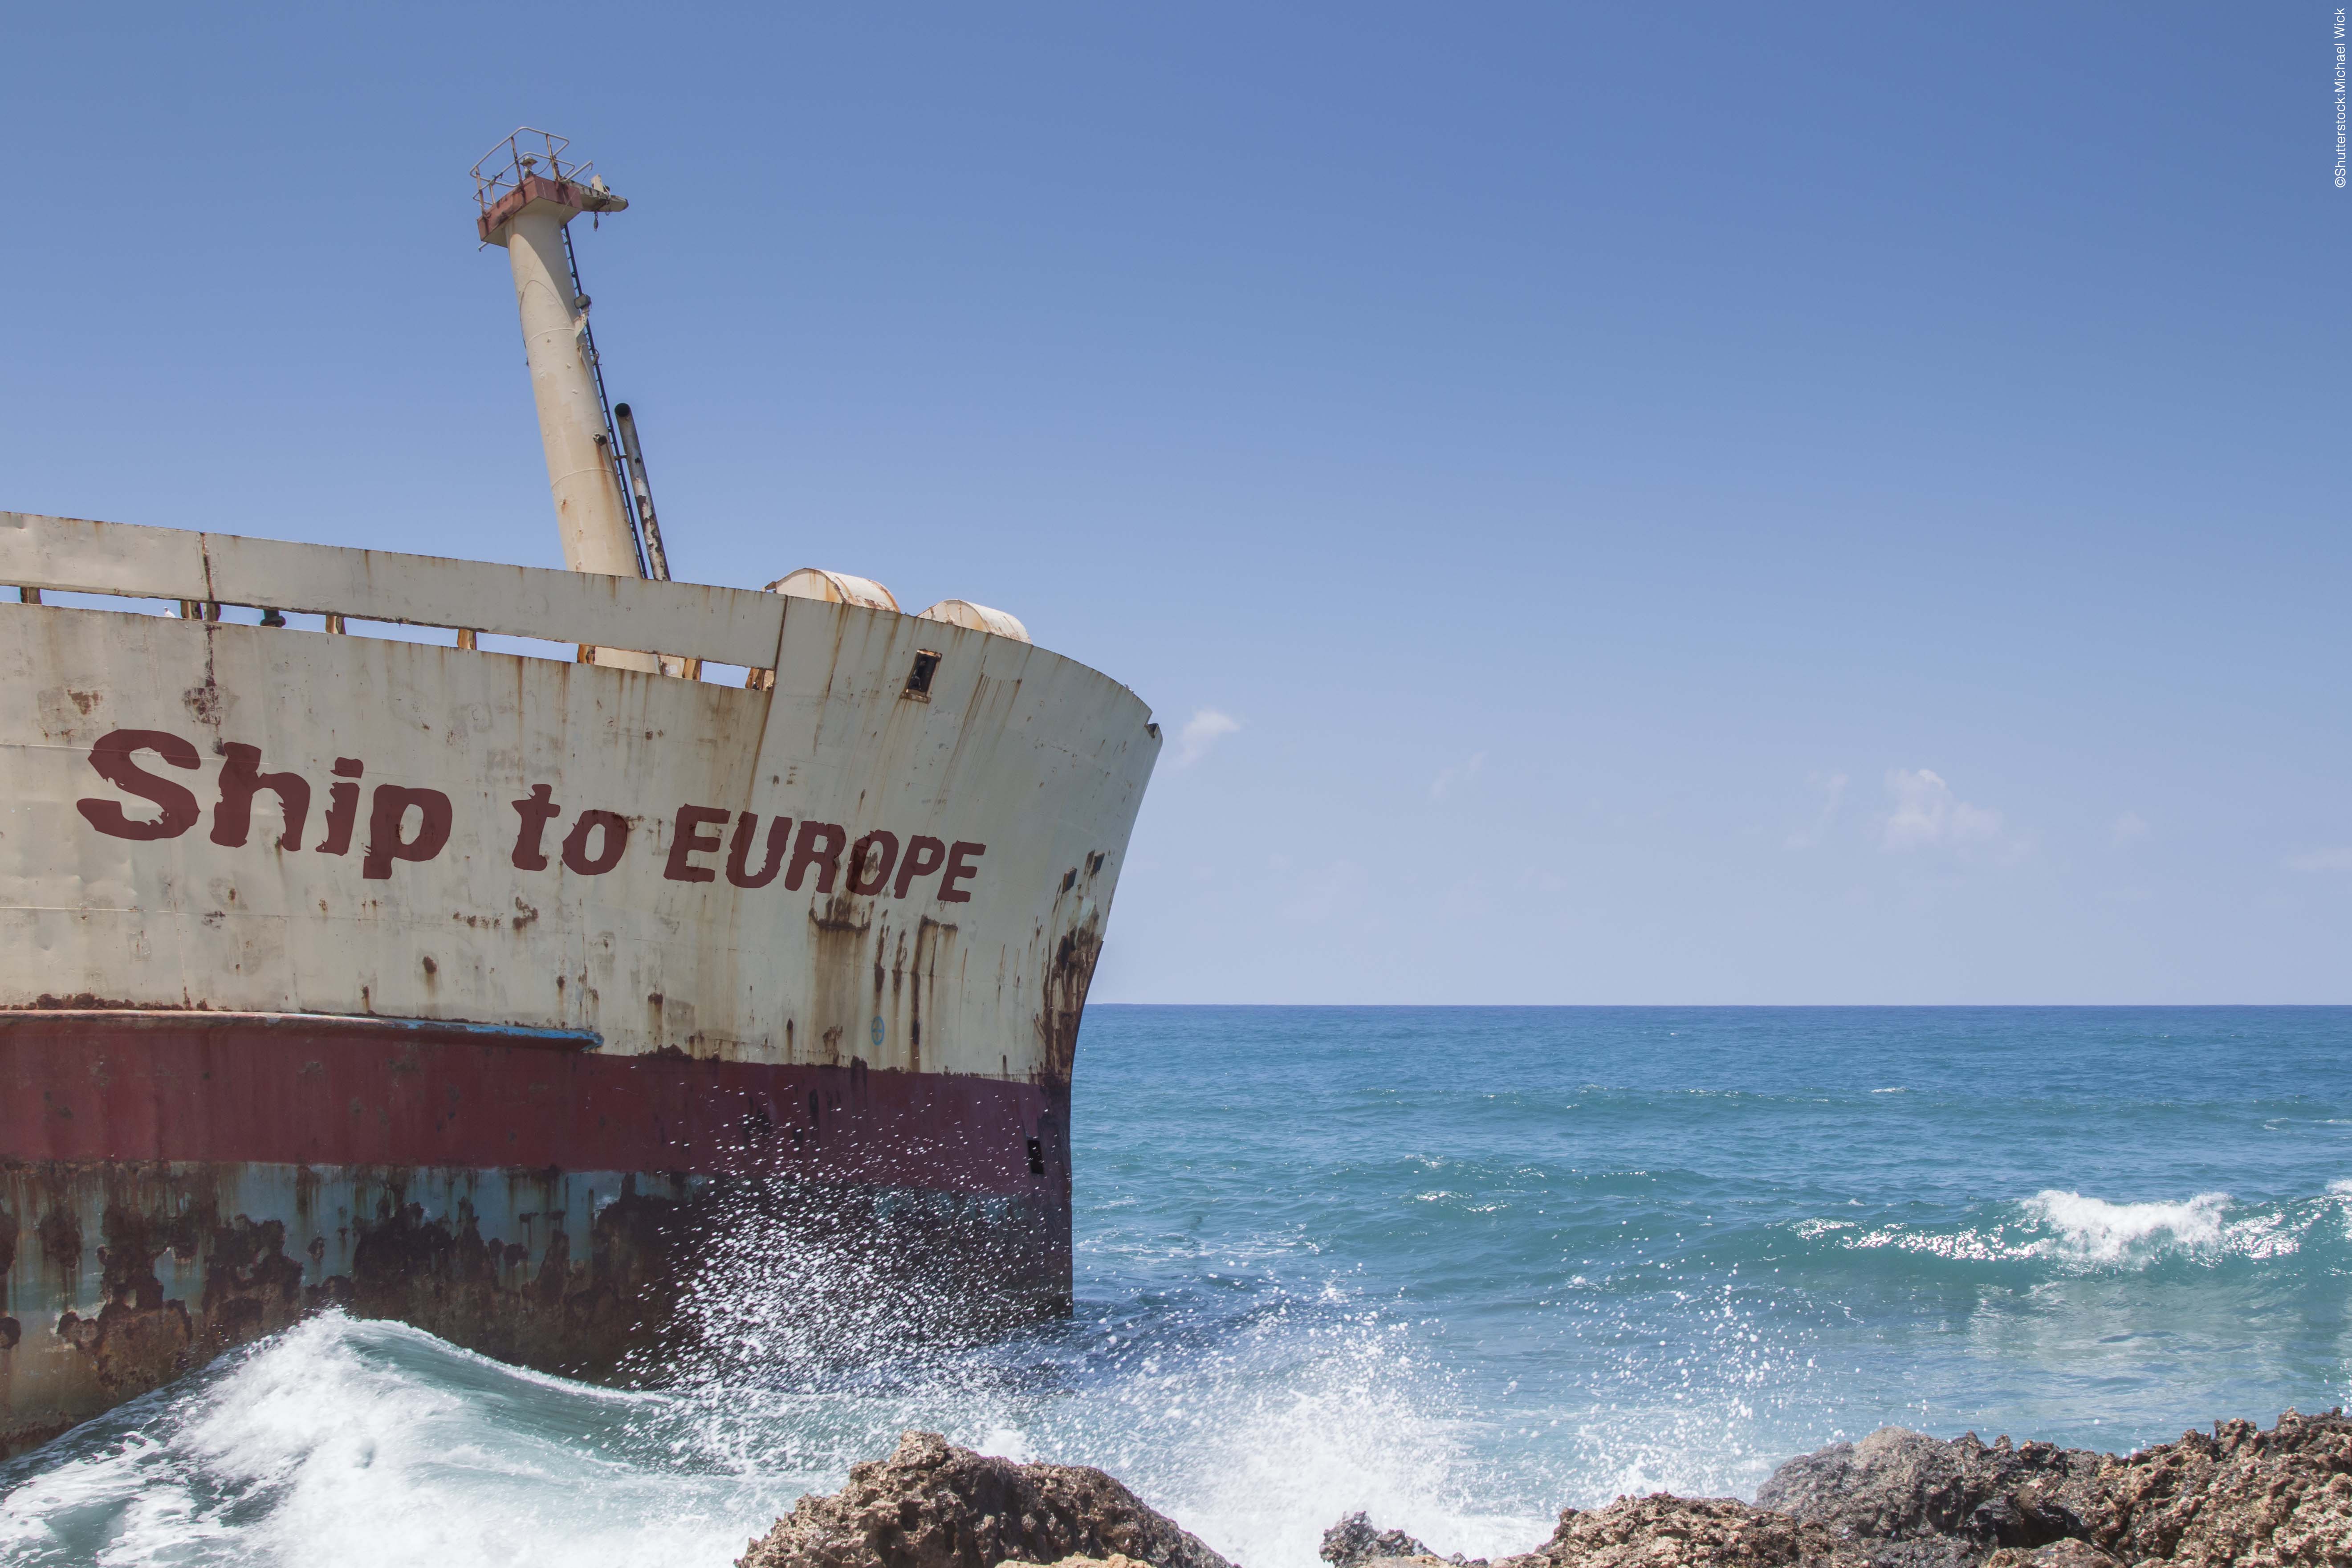 Ship текст. Кораблекрушения в Средиземном море 2015 года. Судно Европа. Слова с ship.